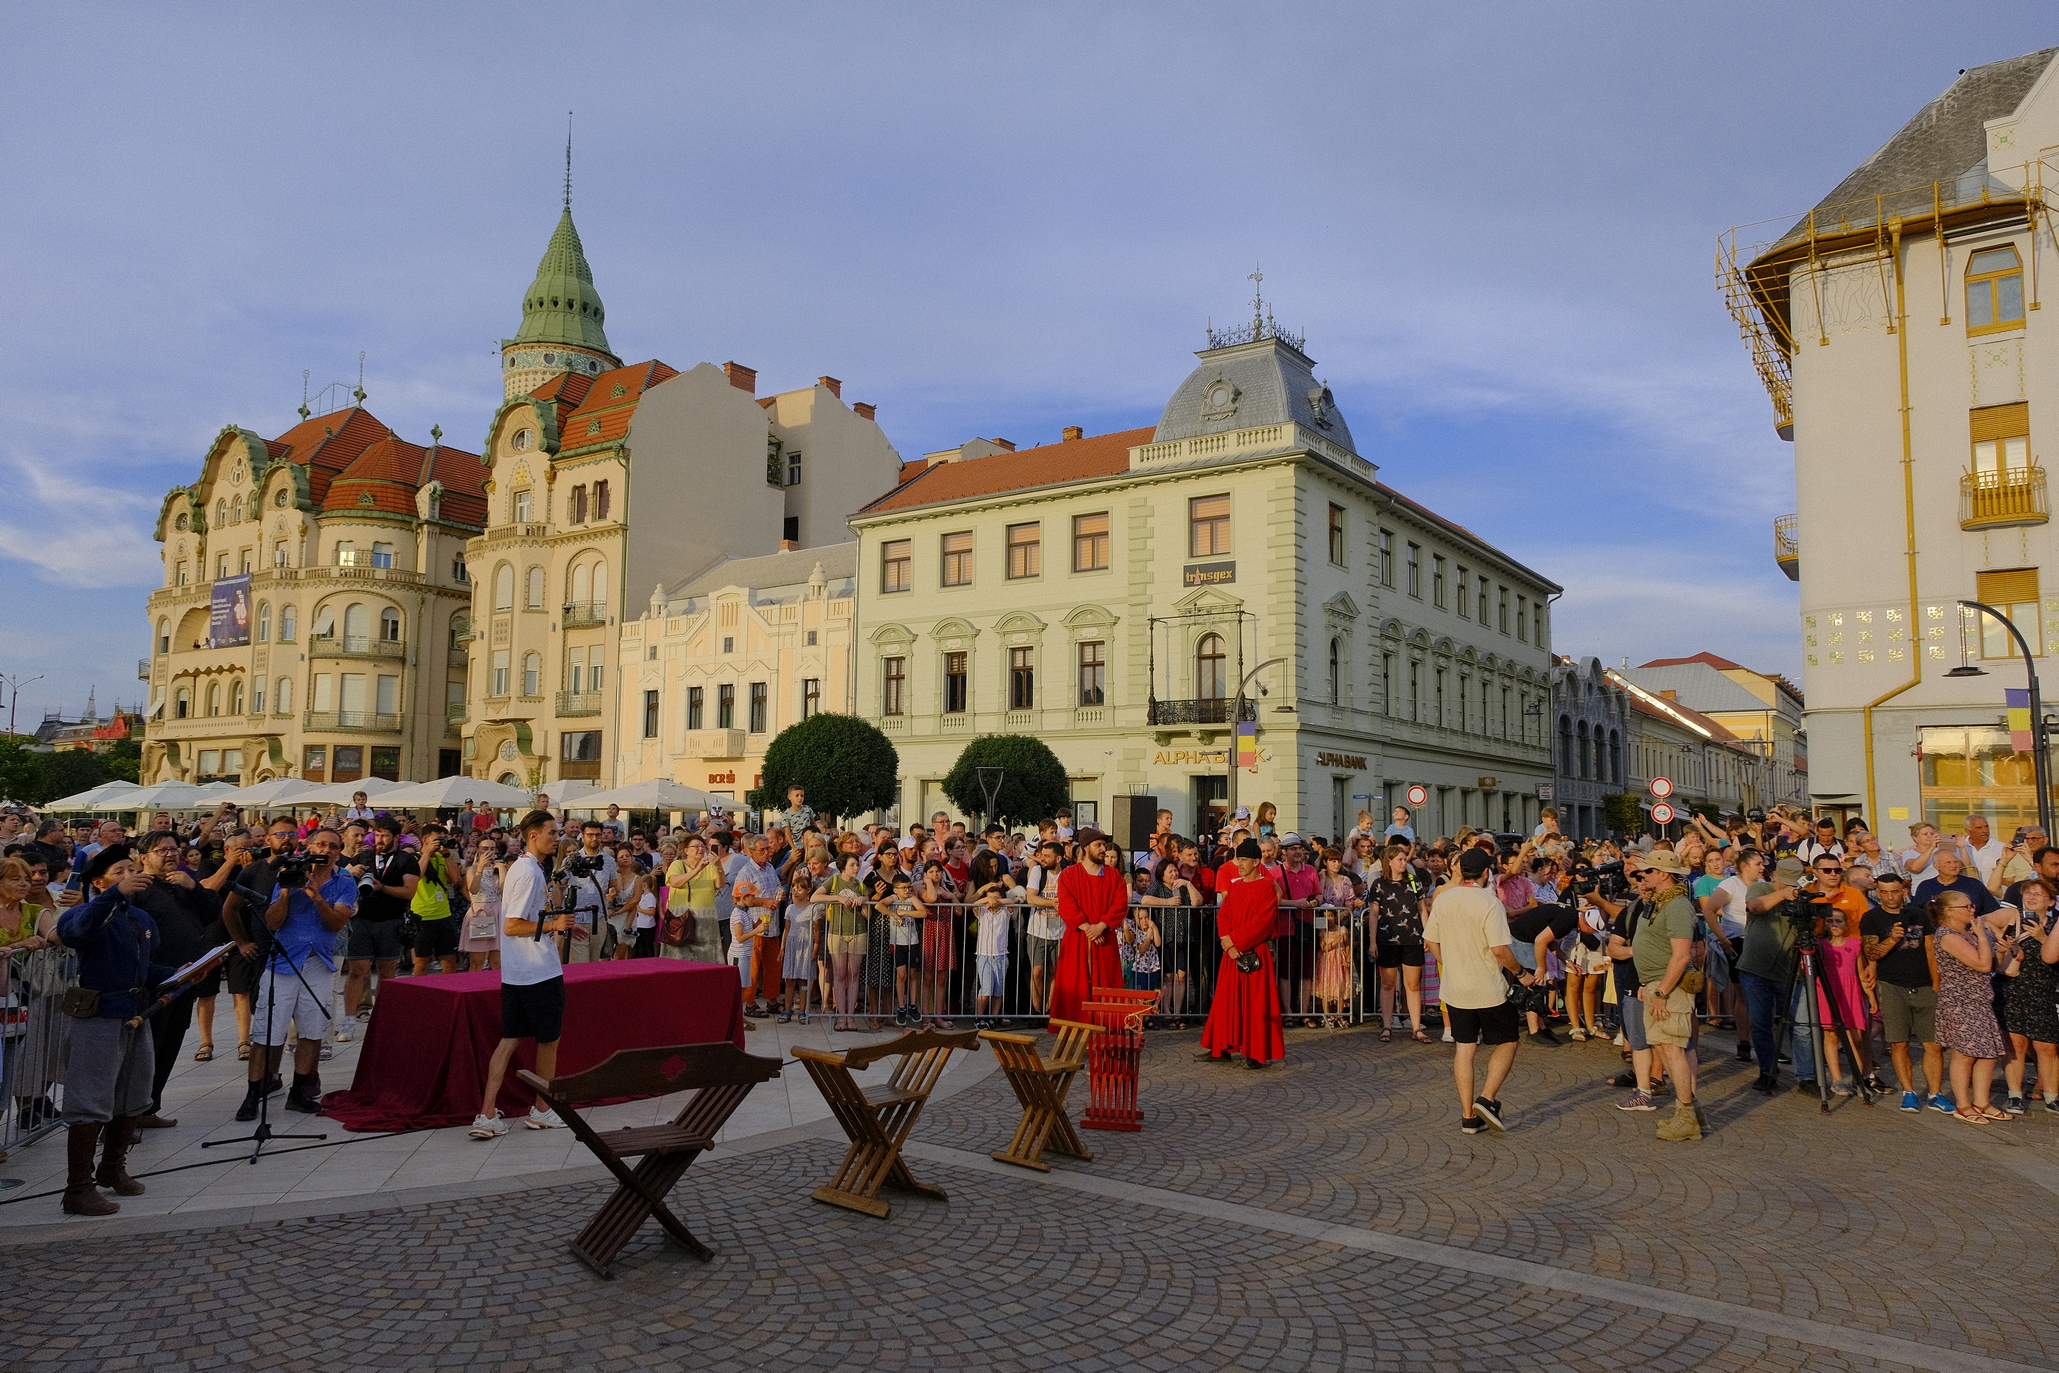 festivalul medieval oradea (17)